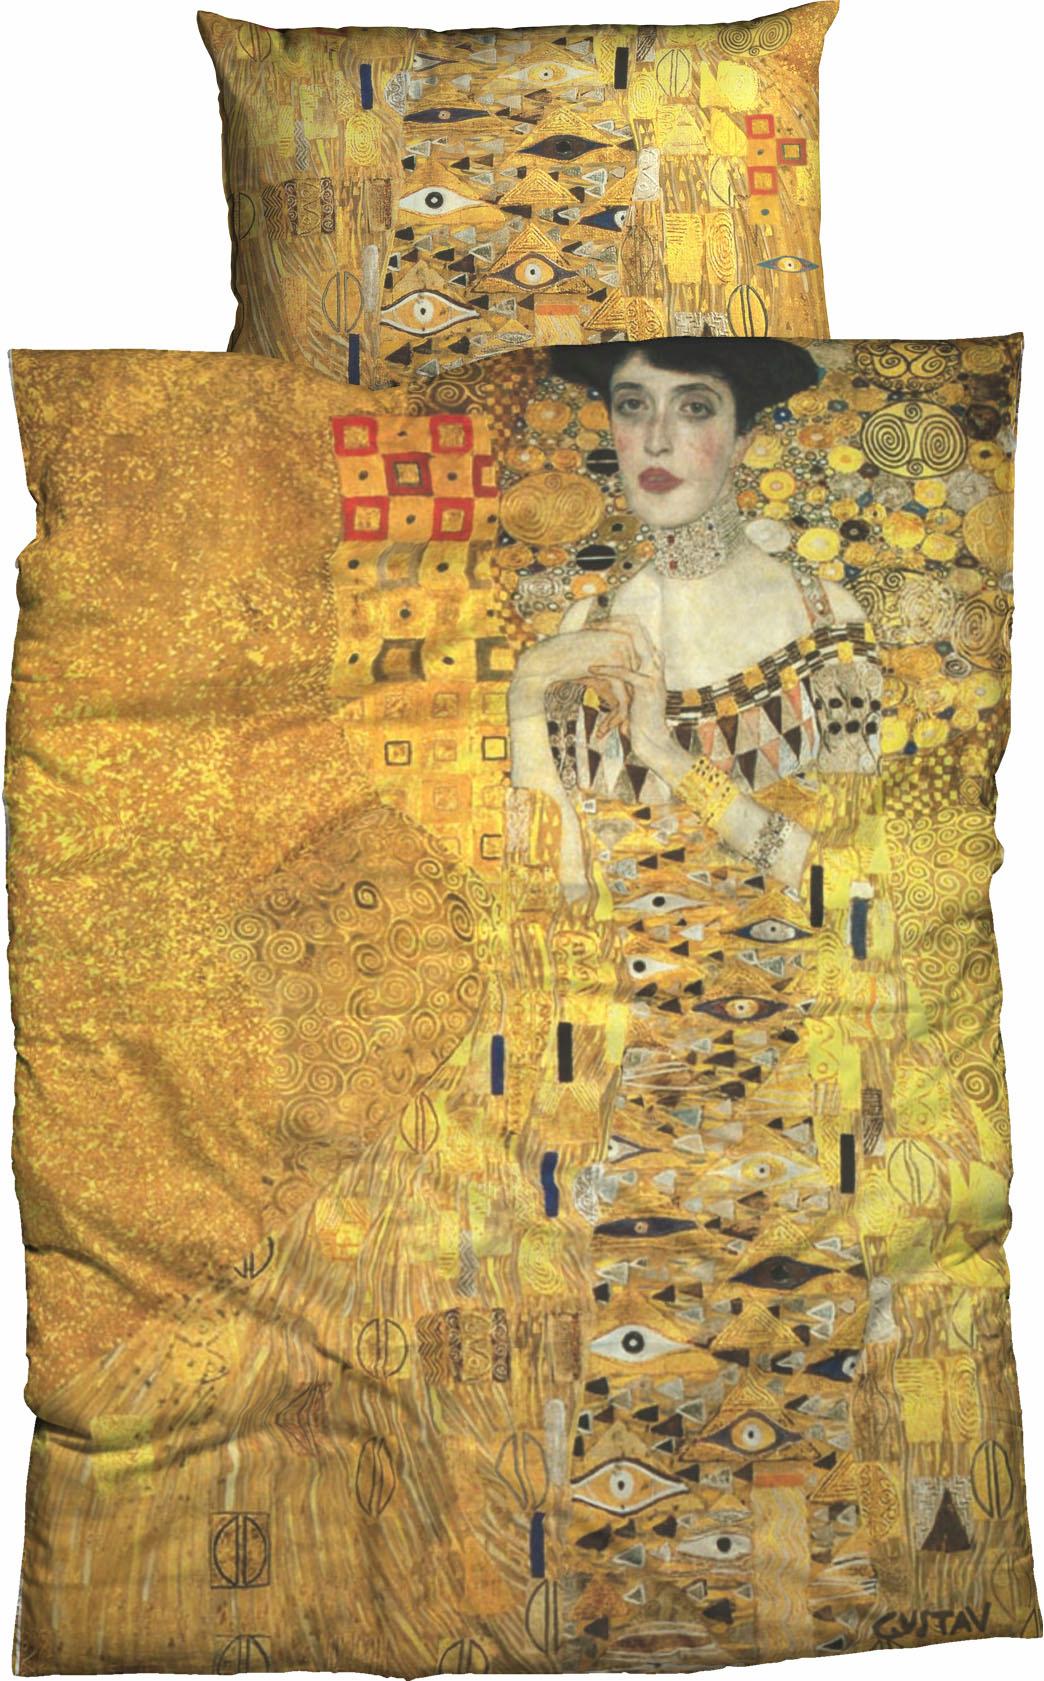 Goebel Bettwäsche "Adele Bloch" Satin gold Größe 155x220 cm (80x80 cm)